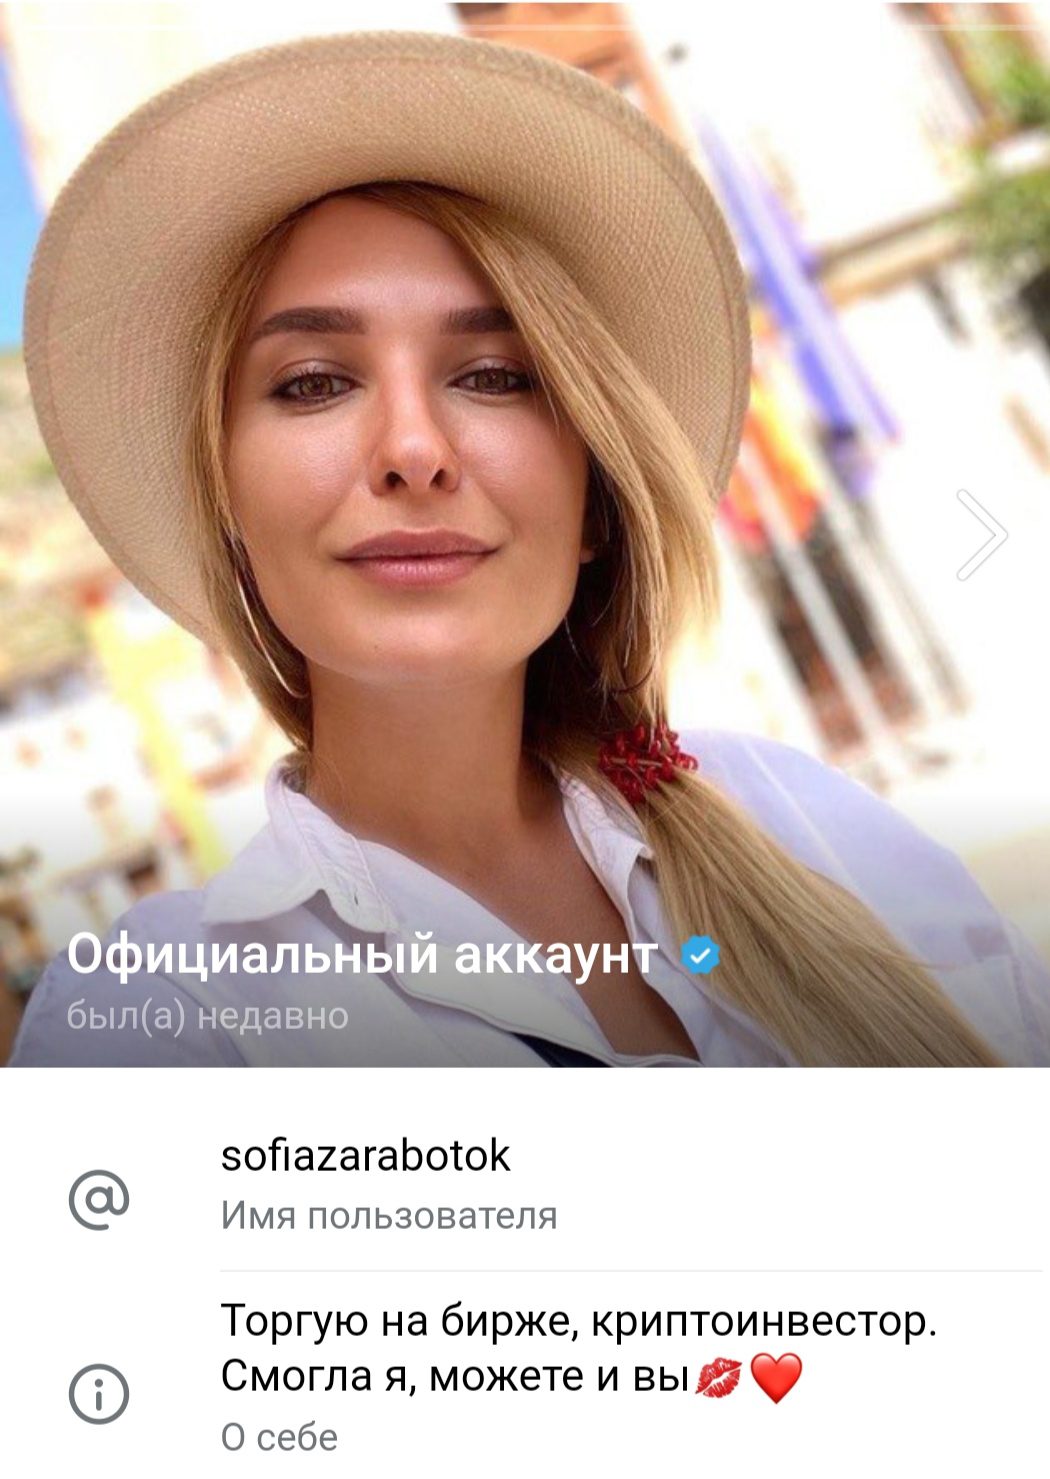 Sofiazarabotok телеграмм